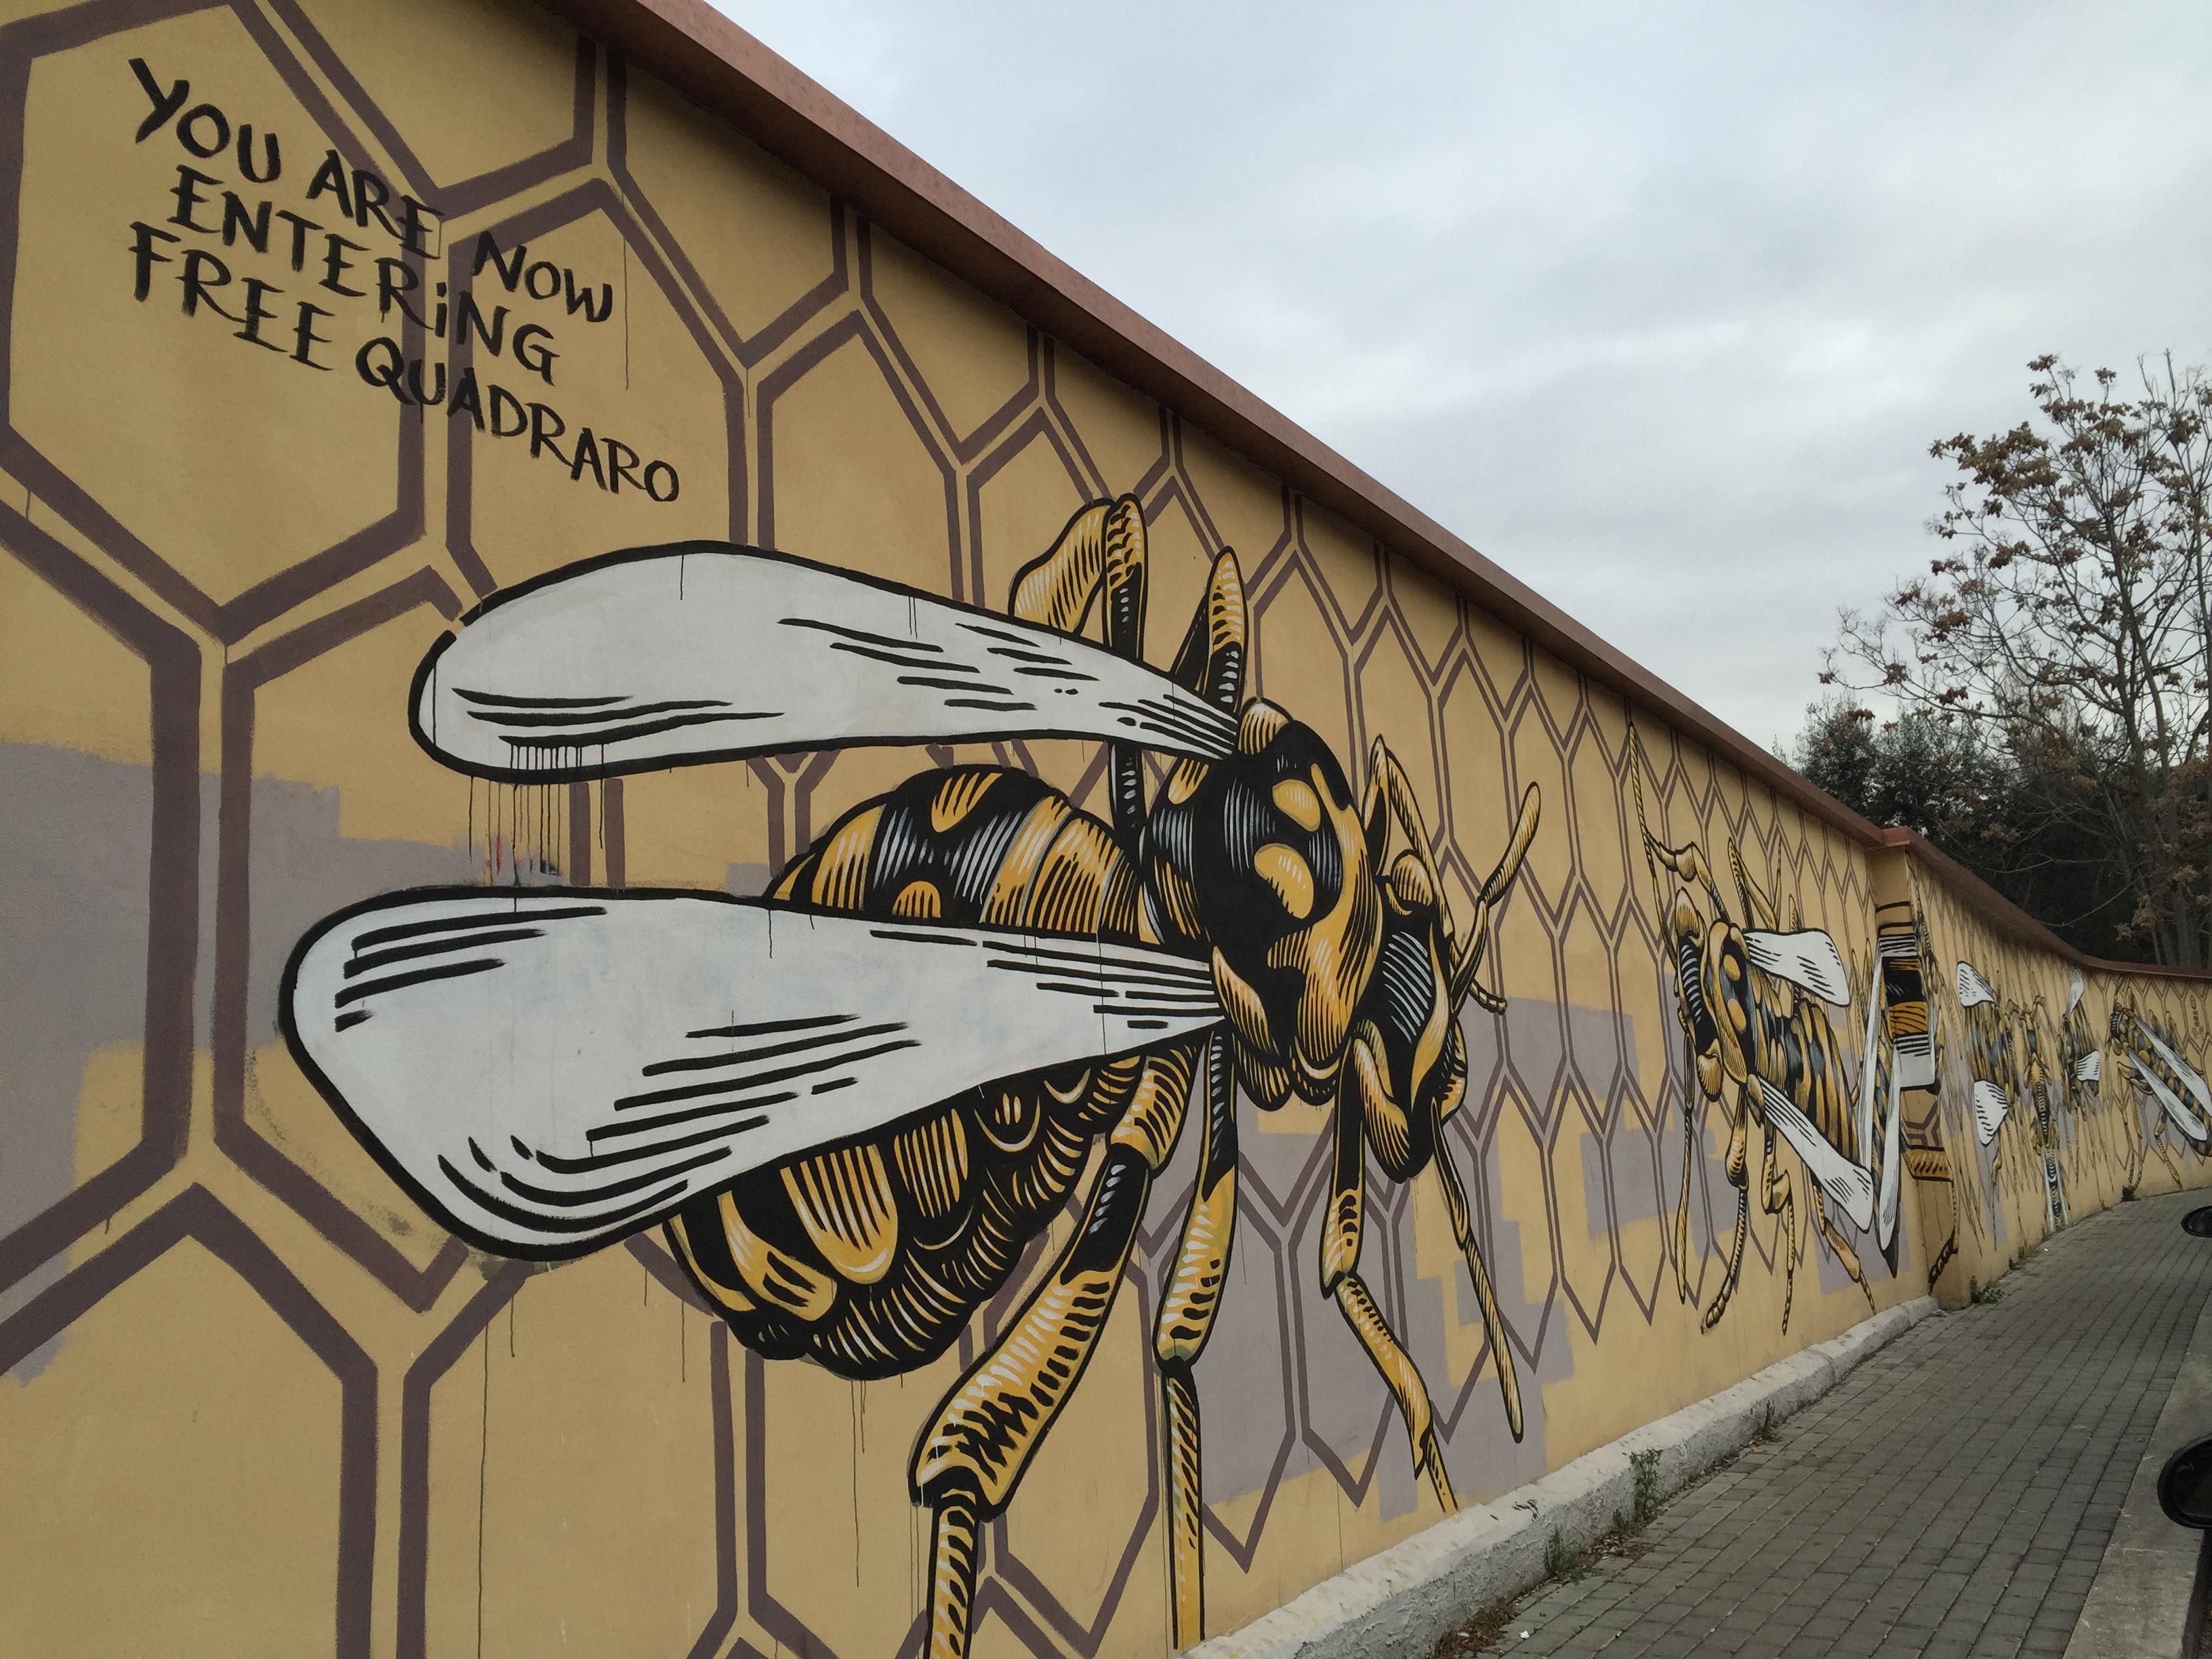 Quadraro, il "nido di vespe" nell'opera dello street artist Lucamaleonte